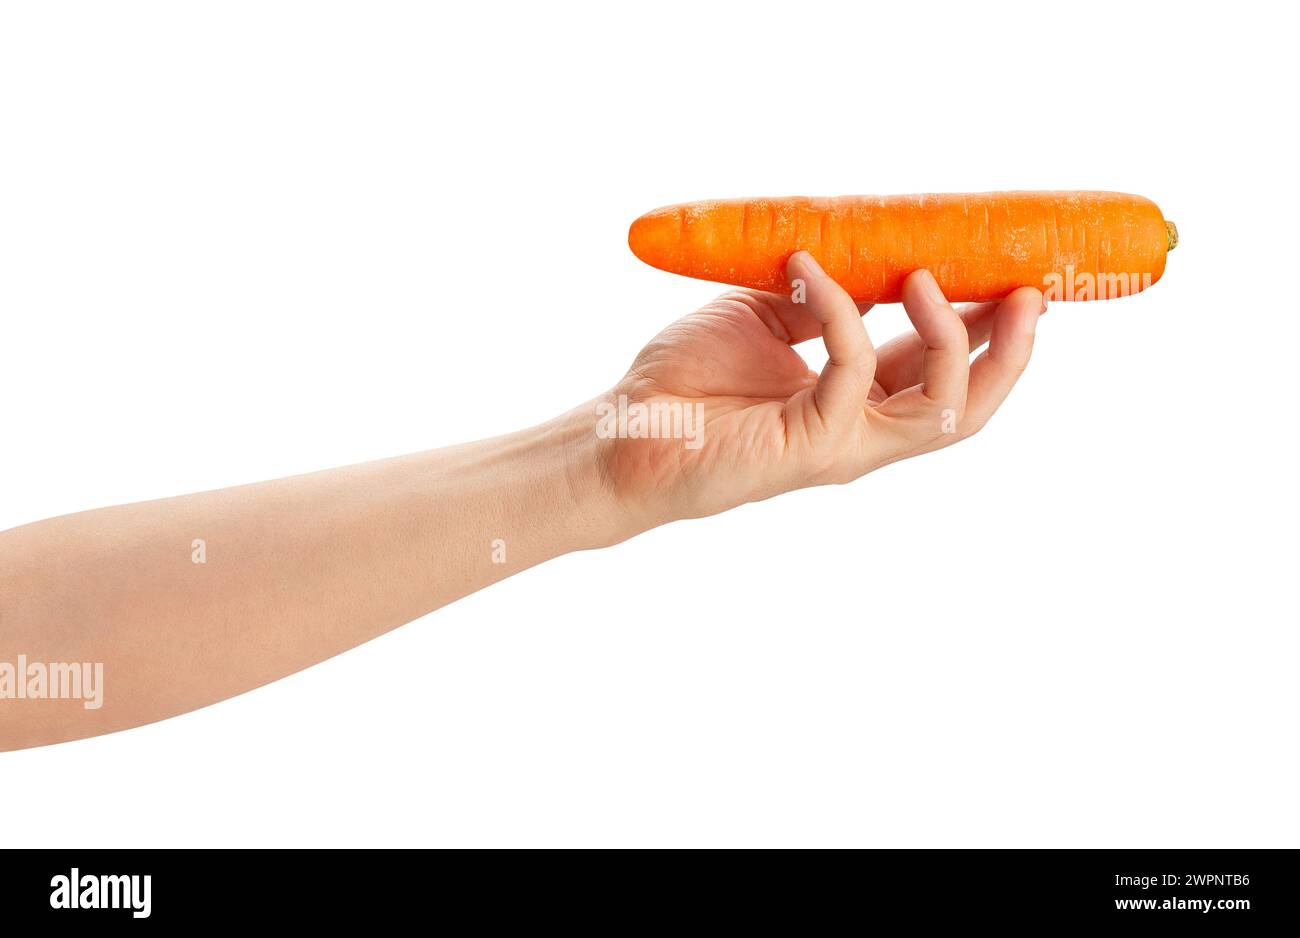 carote in mano isolate sul bianco Foto Stock